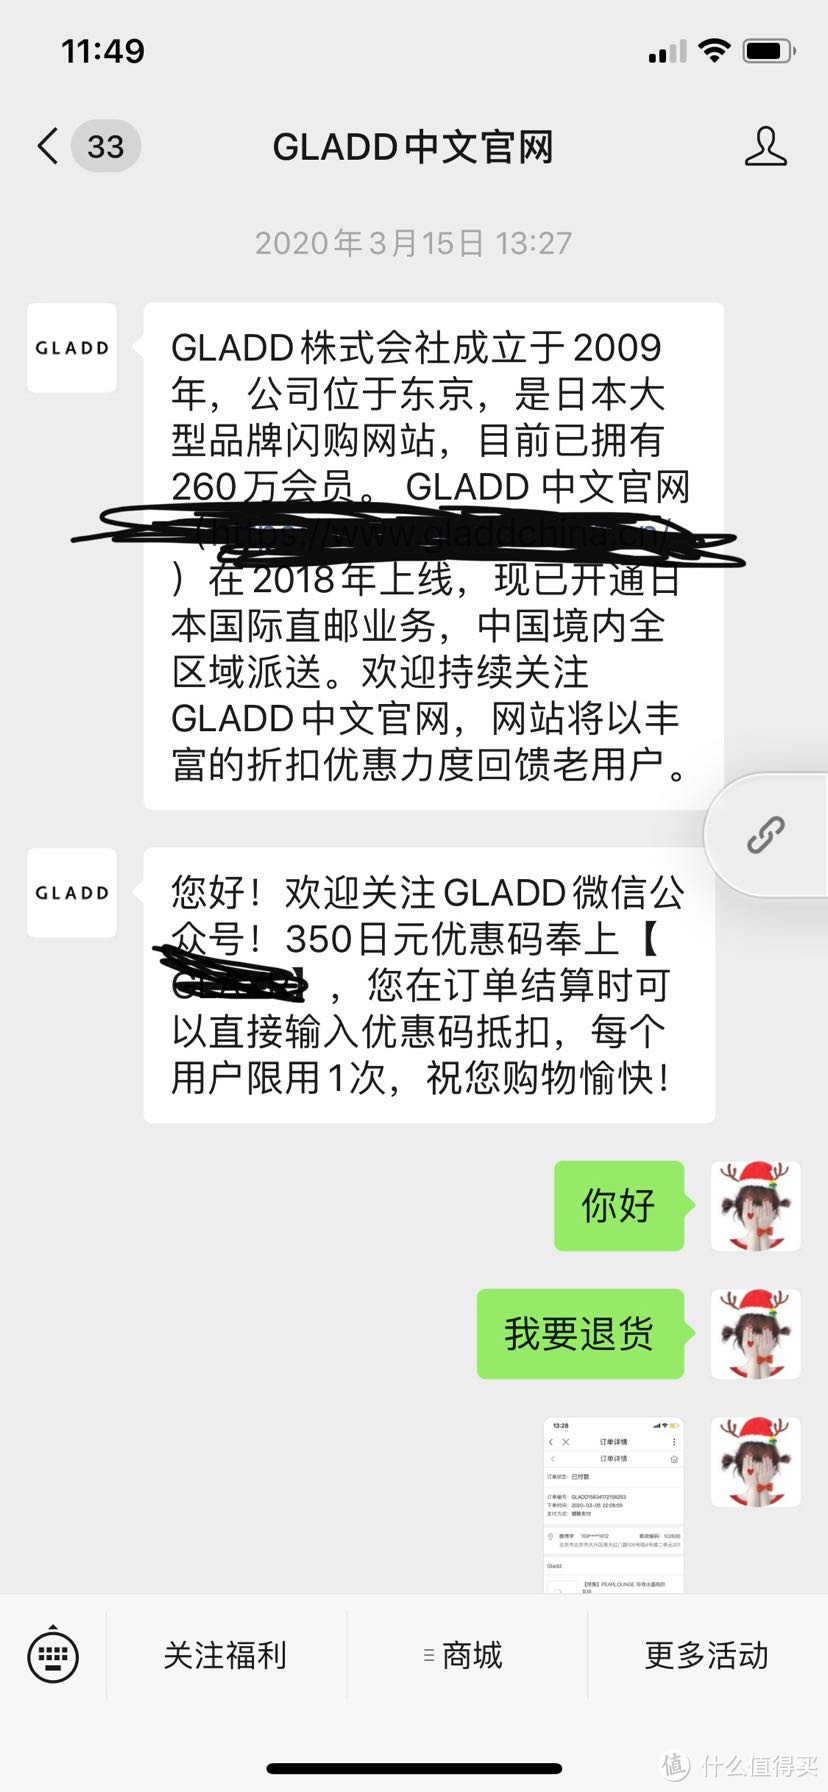 Galdd中文网使用测评